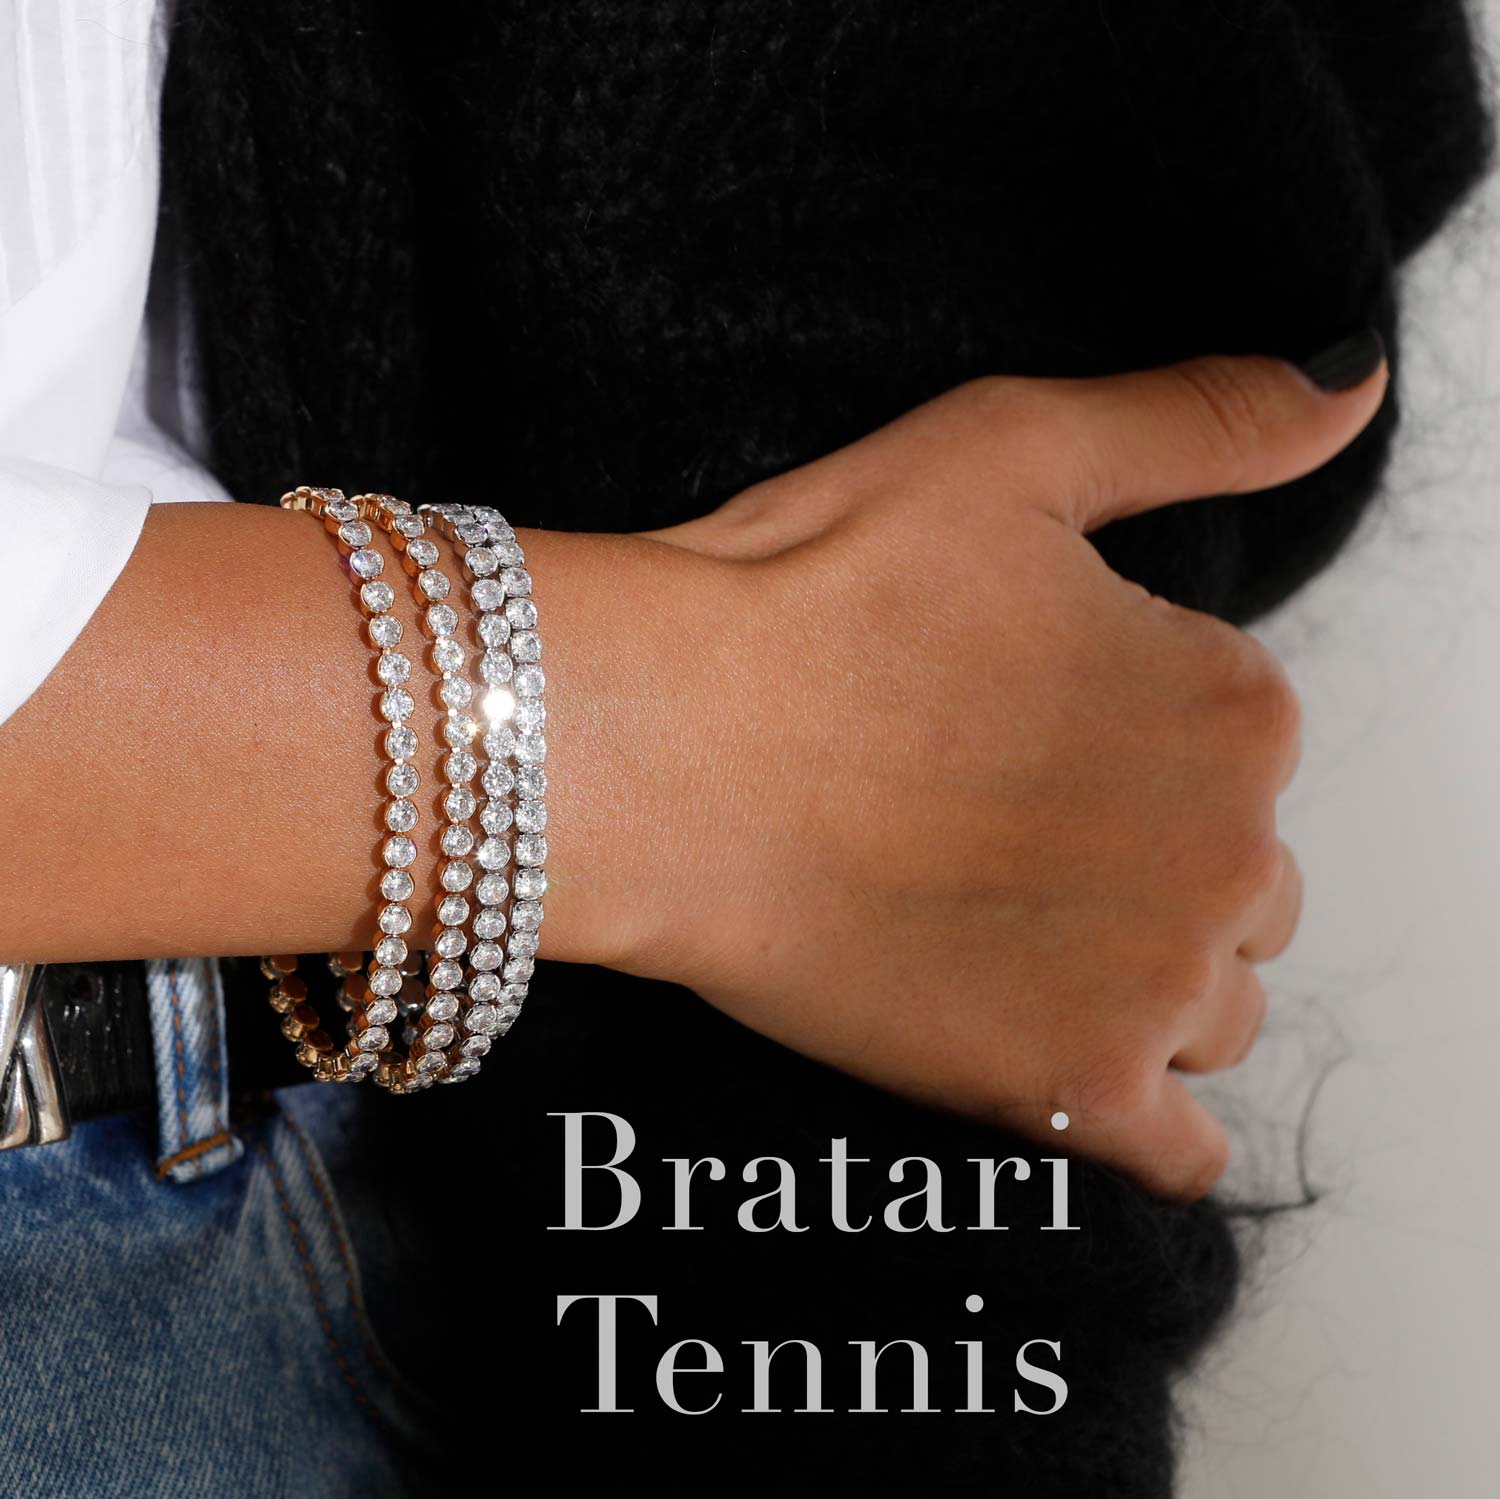 Bratari Tennis